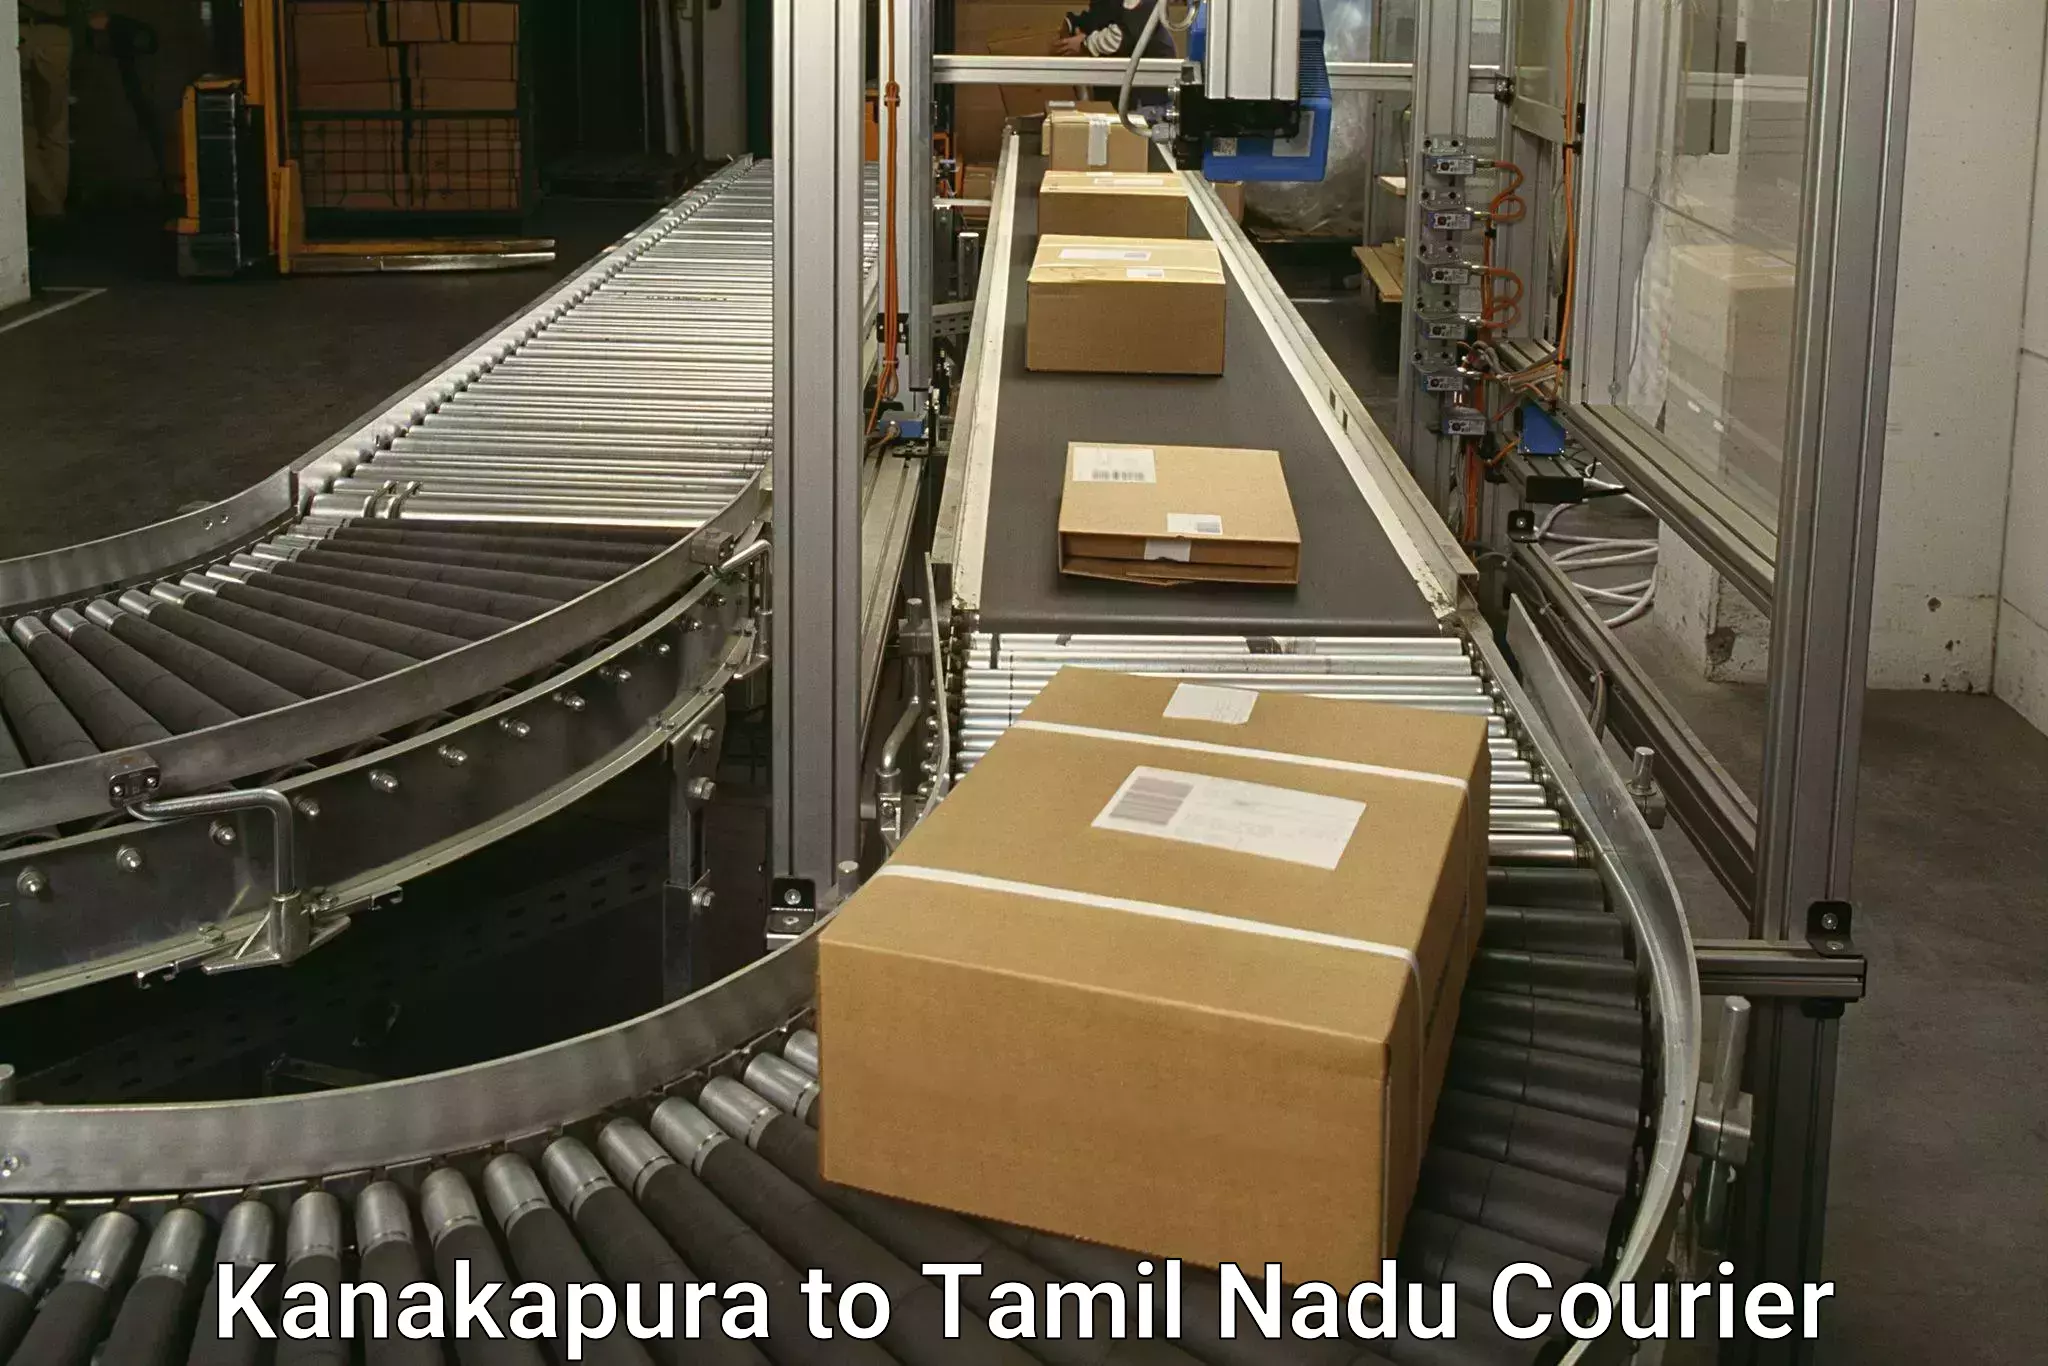 Courier service efficiency in Kanakapura to Manapparai